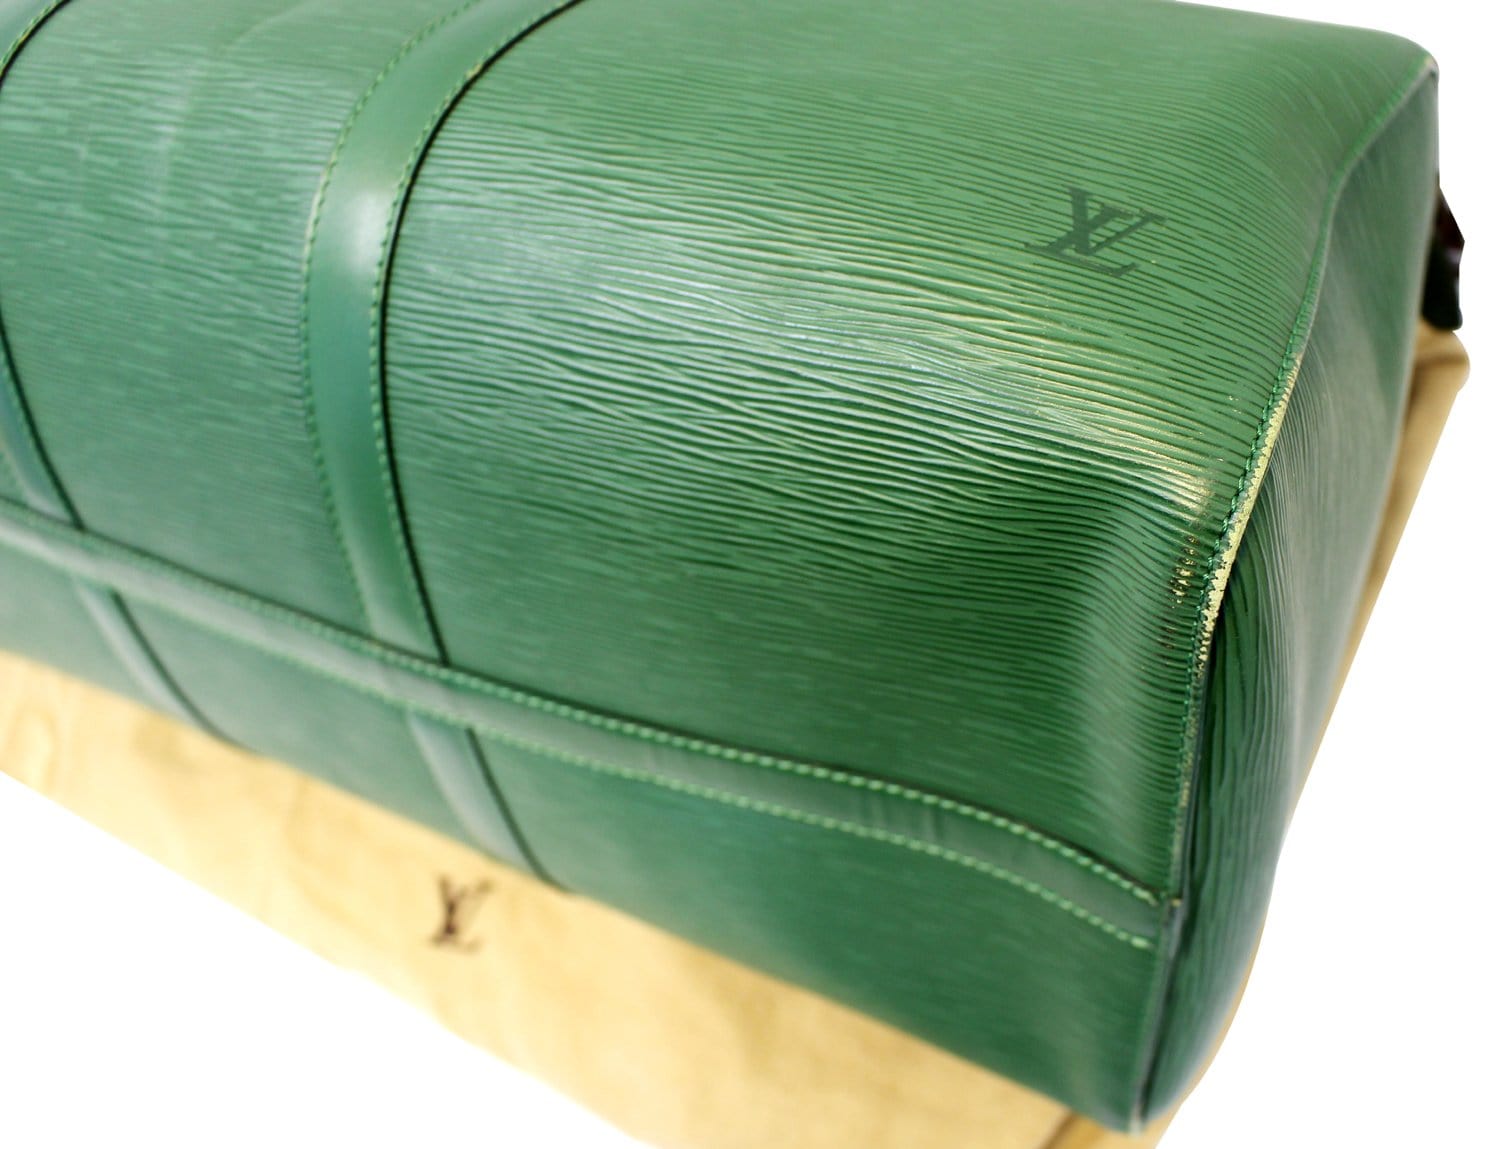 Louis Vuitton Keepall 50 Epi Leather Boston Satchel Bag